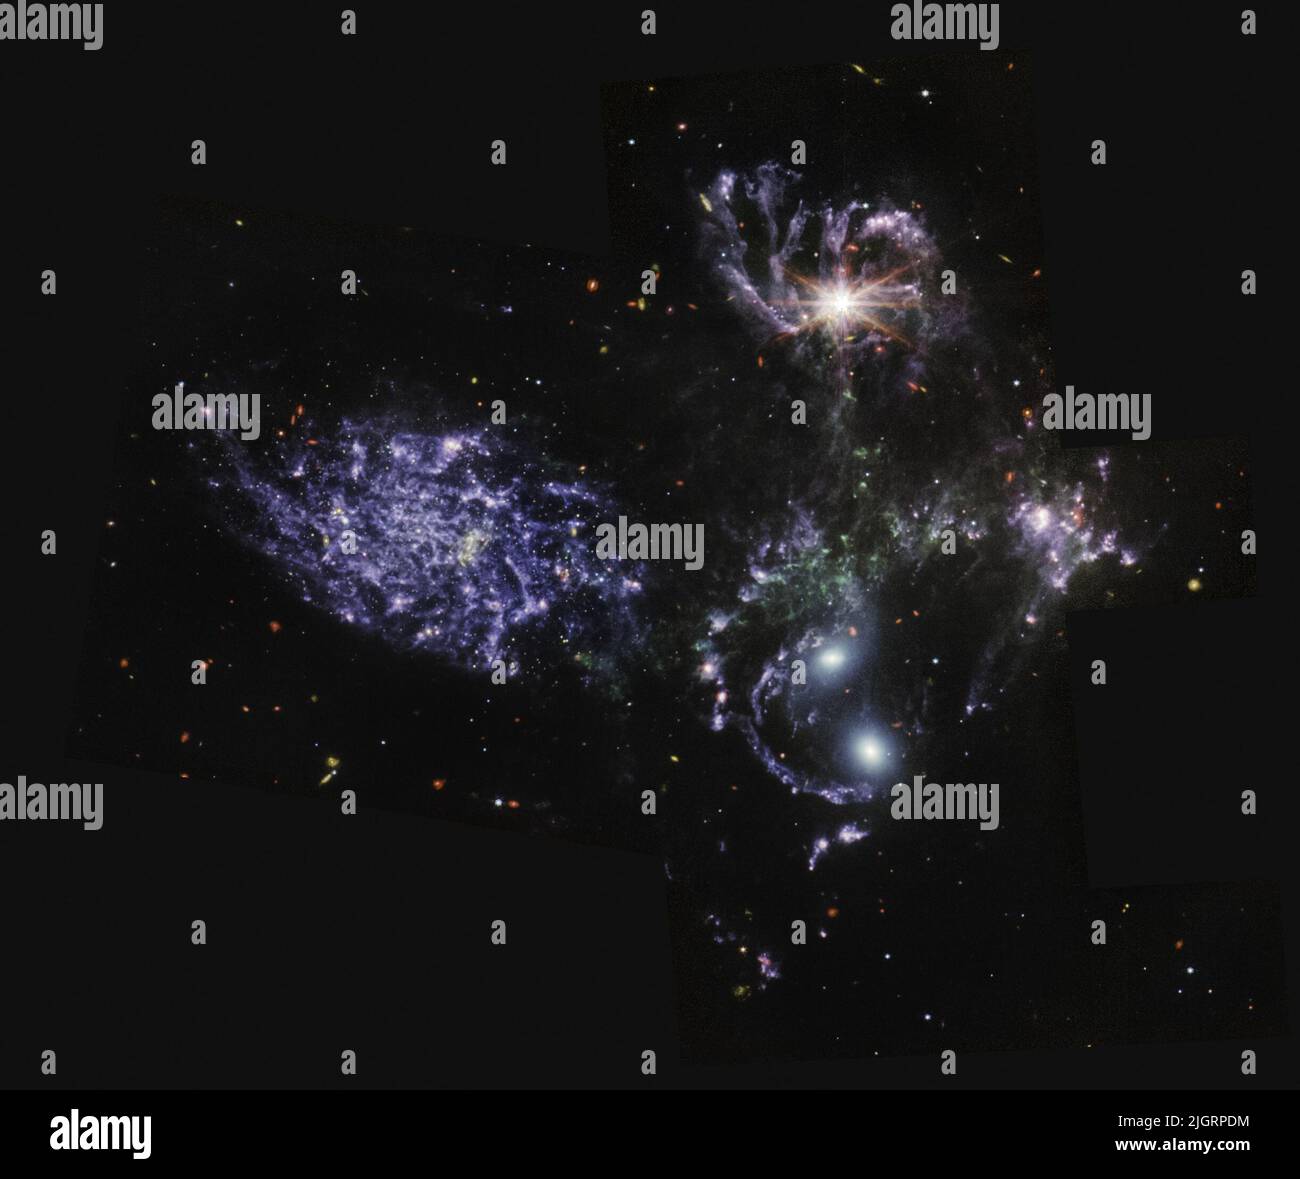 (220712) -- GREENBELT (EE.UU.), 12 de julio de 2022 (Xinhua) -- Imagen publicada por la NASA el 12 de julio de 2022 muestra el Quinteto de Stephan, una colección de cinco galaxias, vistas por MIRI del telescopio espacial James Webb. La NASA publicó el martes las primeras imágenes a todo color del universo del telescopio James Webb y sus datos espectroscópicos, revelando las vistas detalladas y sin precedentes del universo. (NASA, ESA, CSA, STScI/Folleto vía Xinhua) Foto de stock